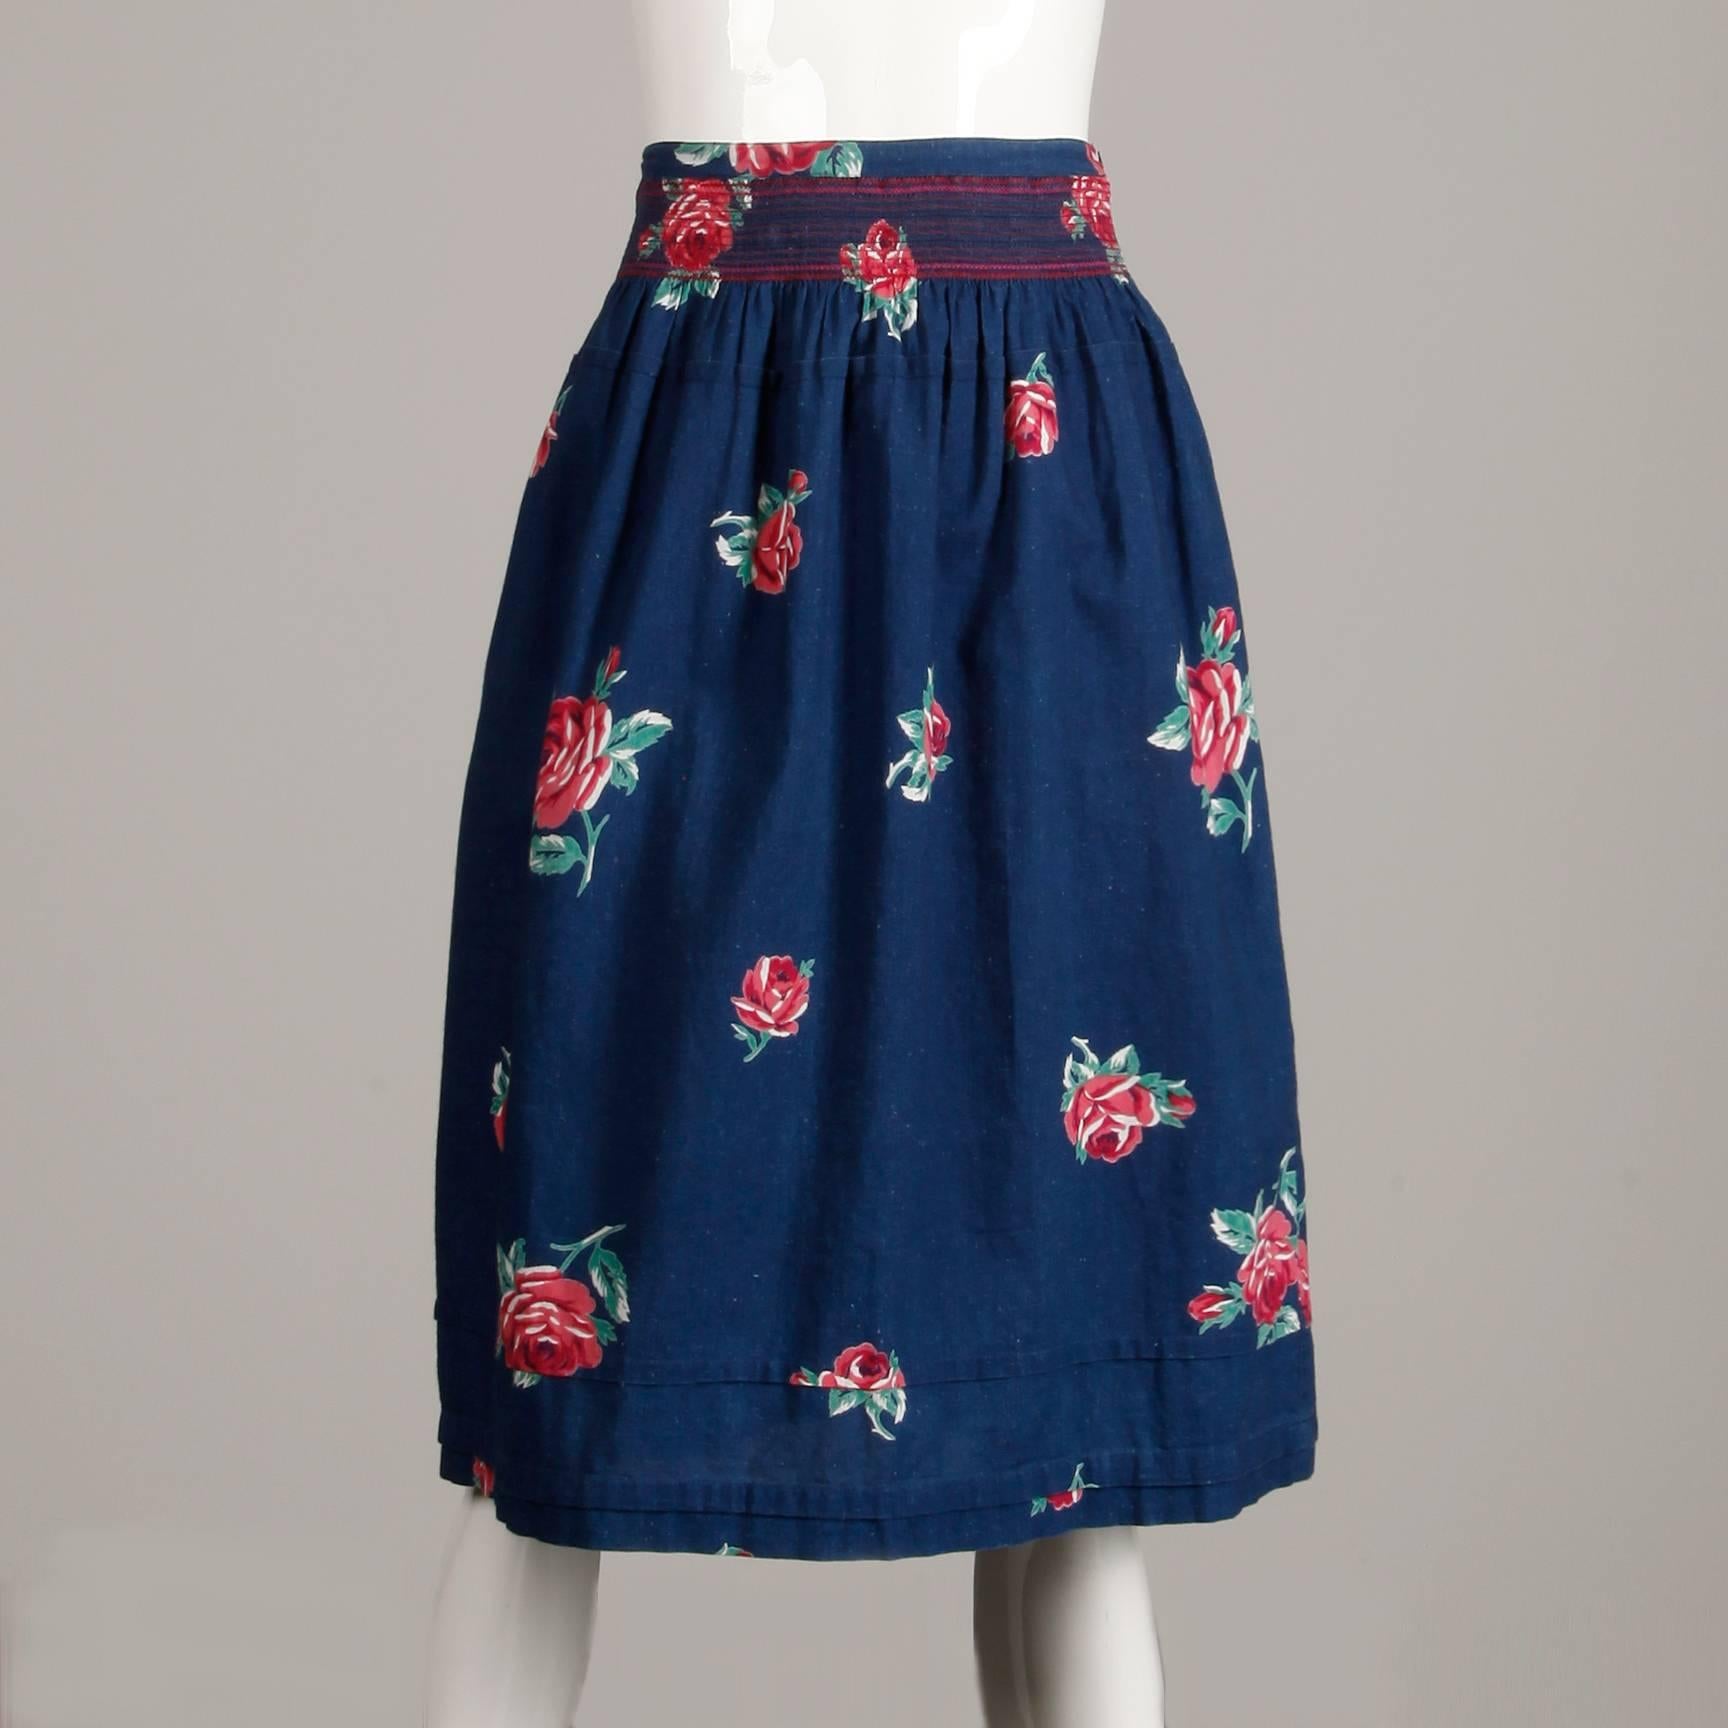 Ravissante jupe en denim vintage des années 1970 à imprimé floral de Kenzo. Non doublé avec fermeture par bouton sur le côté. La taille marquée est 38, et la jupe s'adapte comme une taille petite moderne. 100% coton. La taille mesure 25